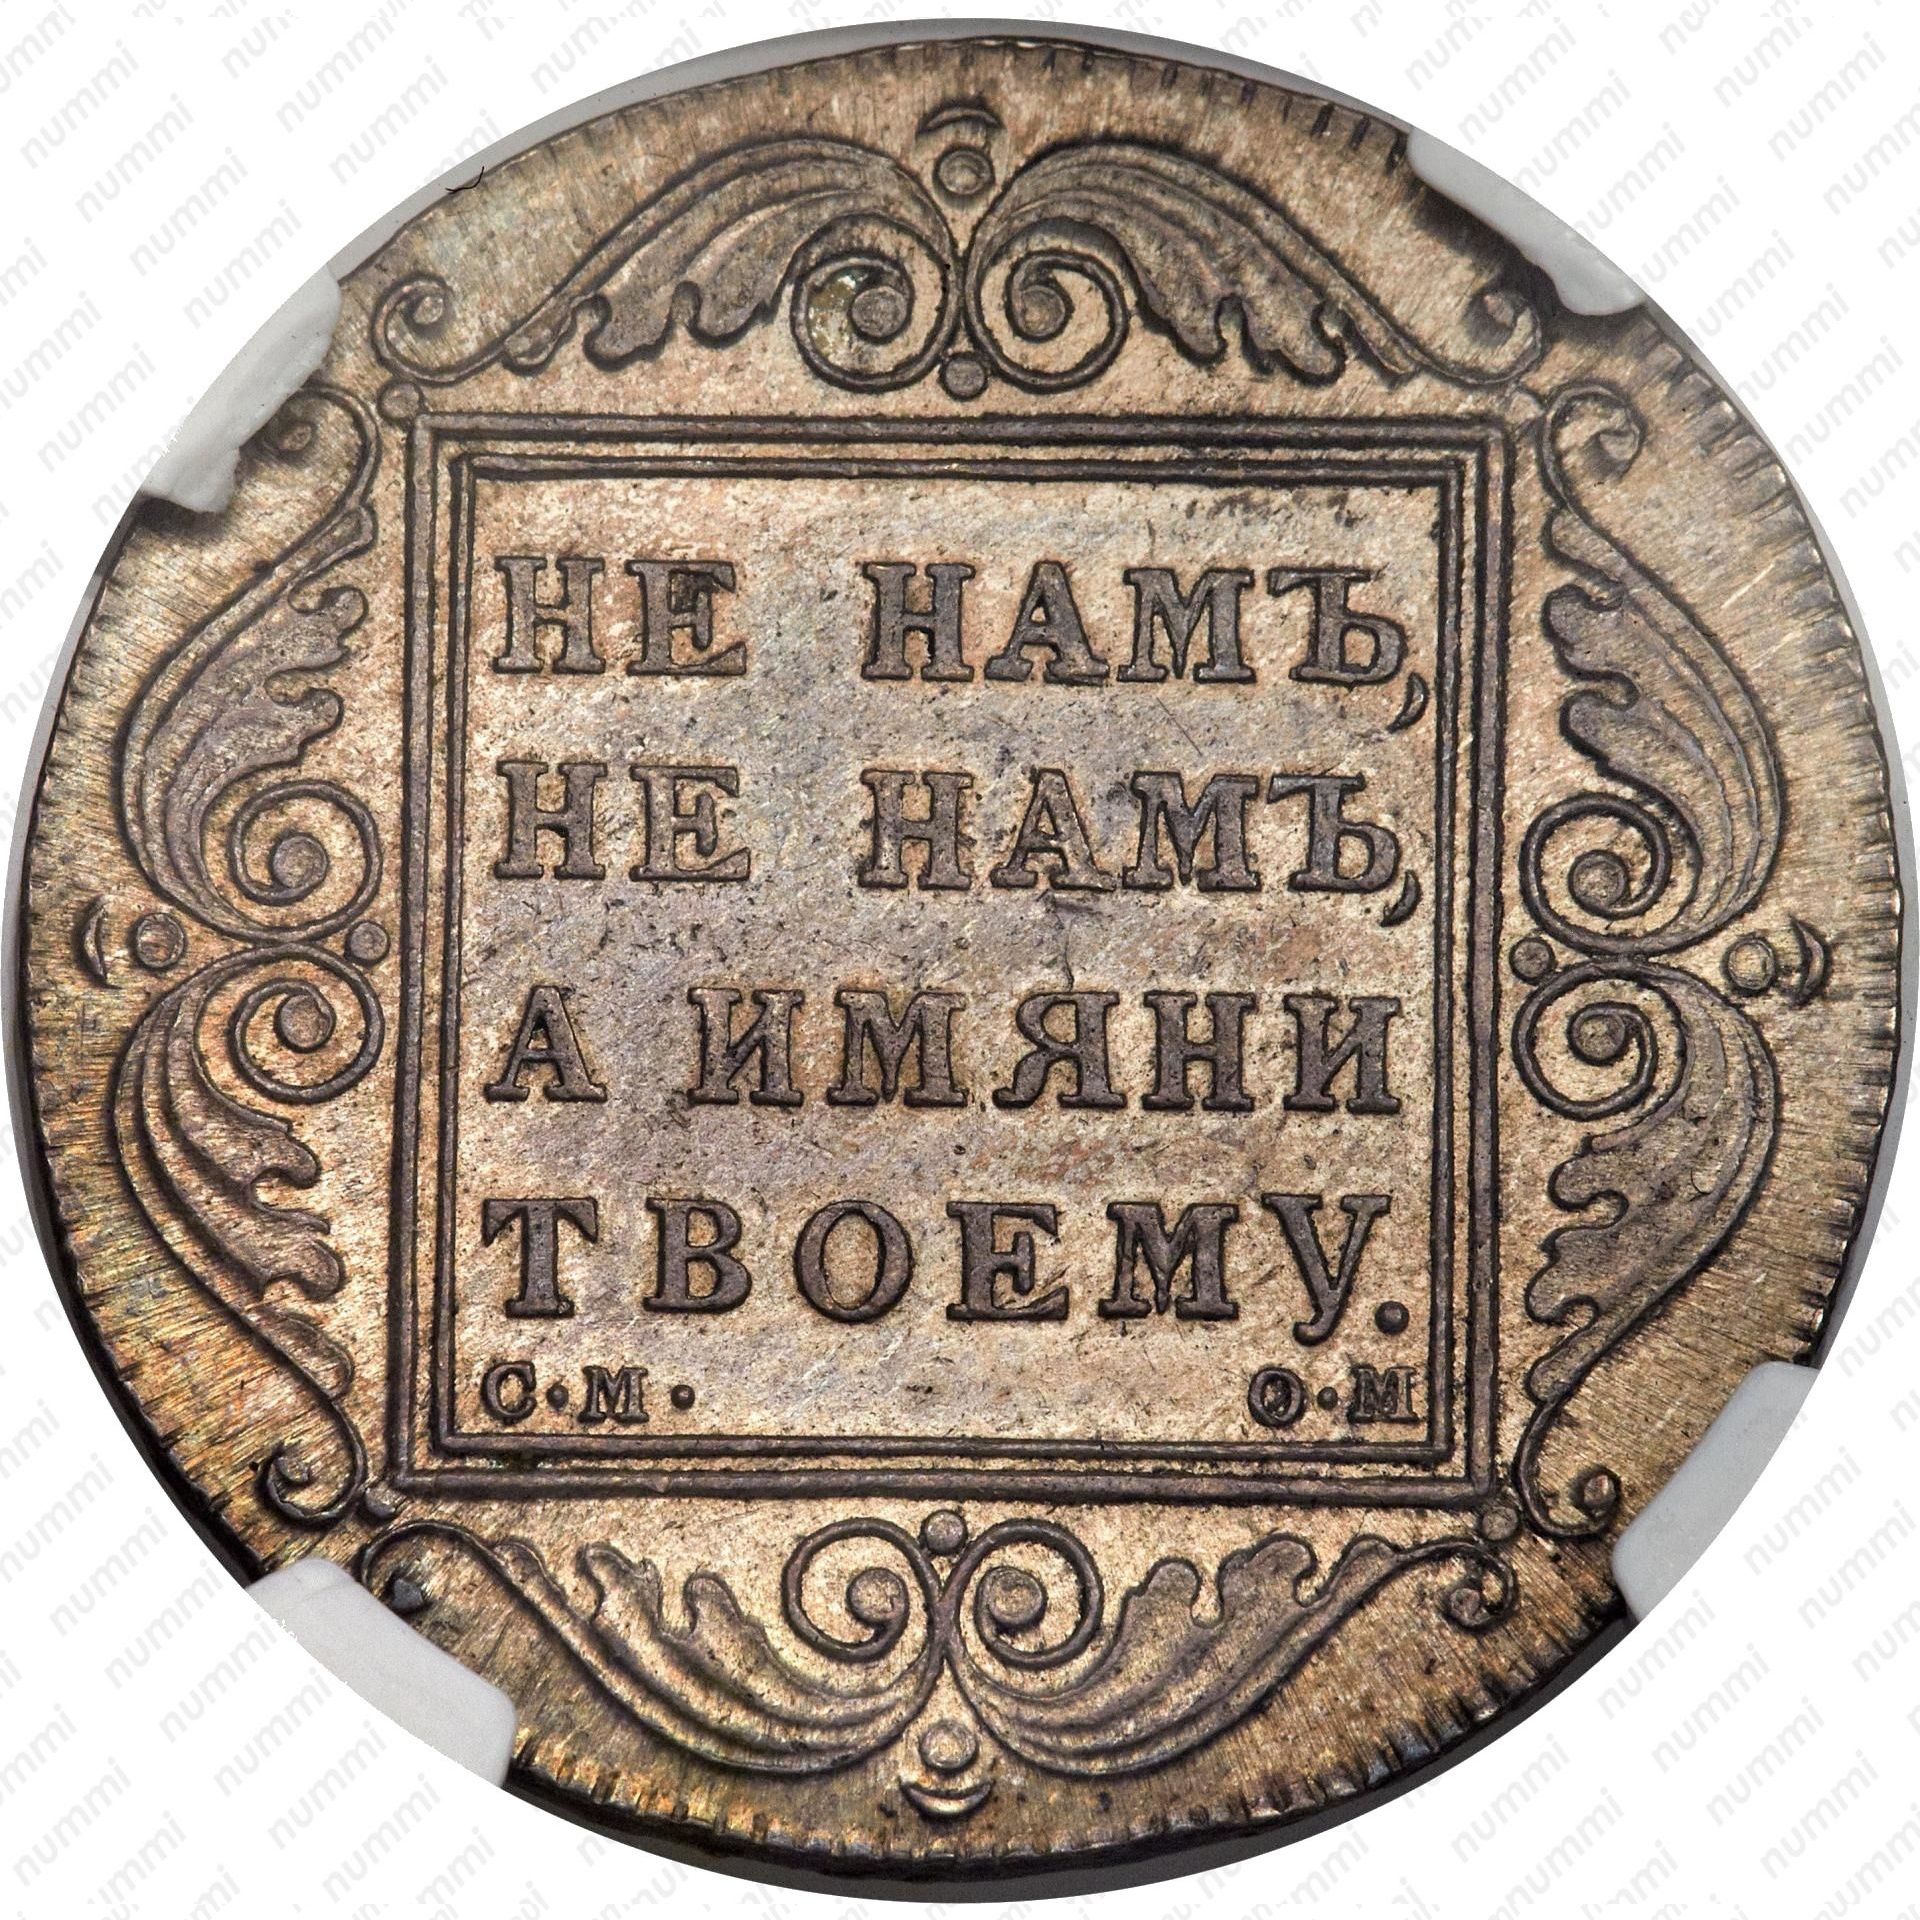 1 от 1800. Монета 1 рубль 1800 года.